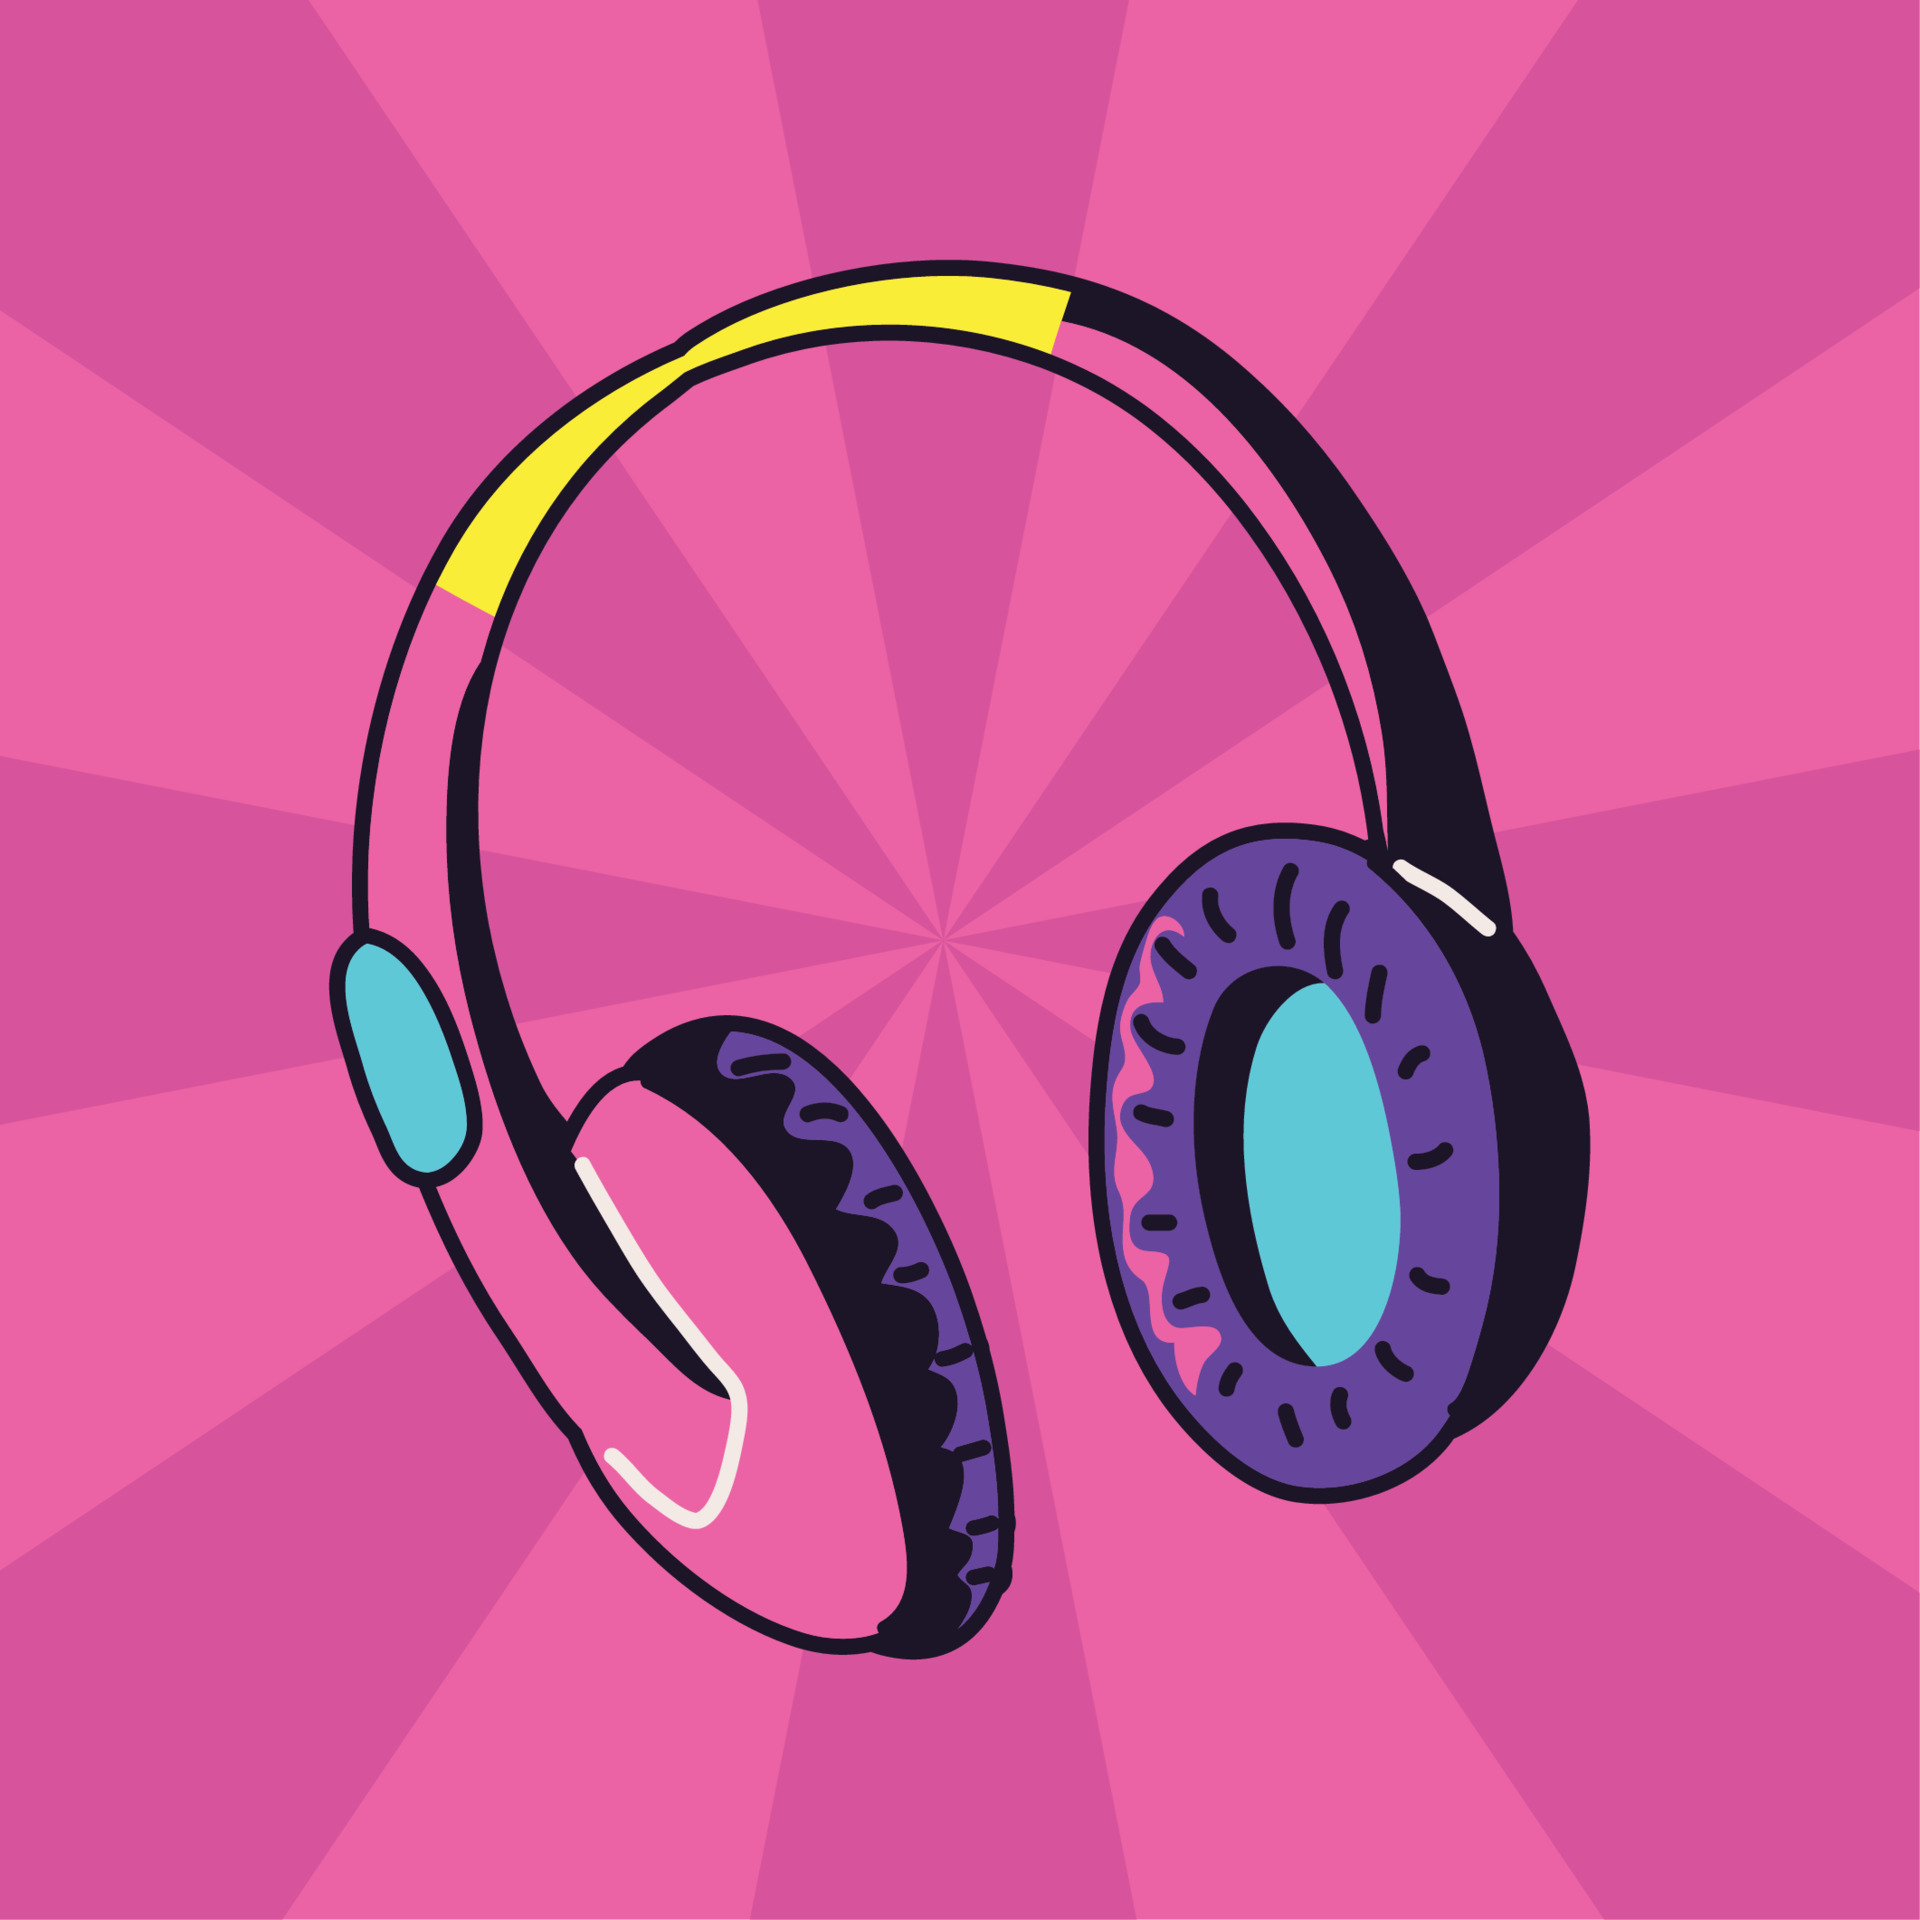 90s headphones pink background 11143638 Vector Art at Vecteezy